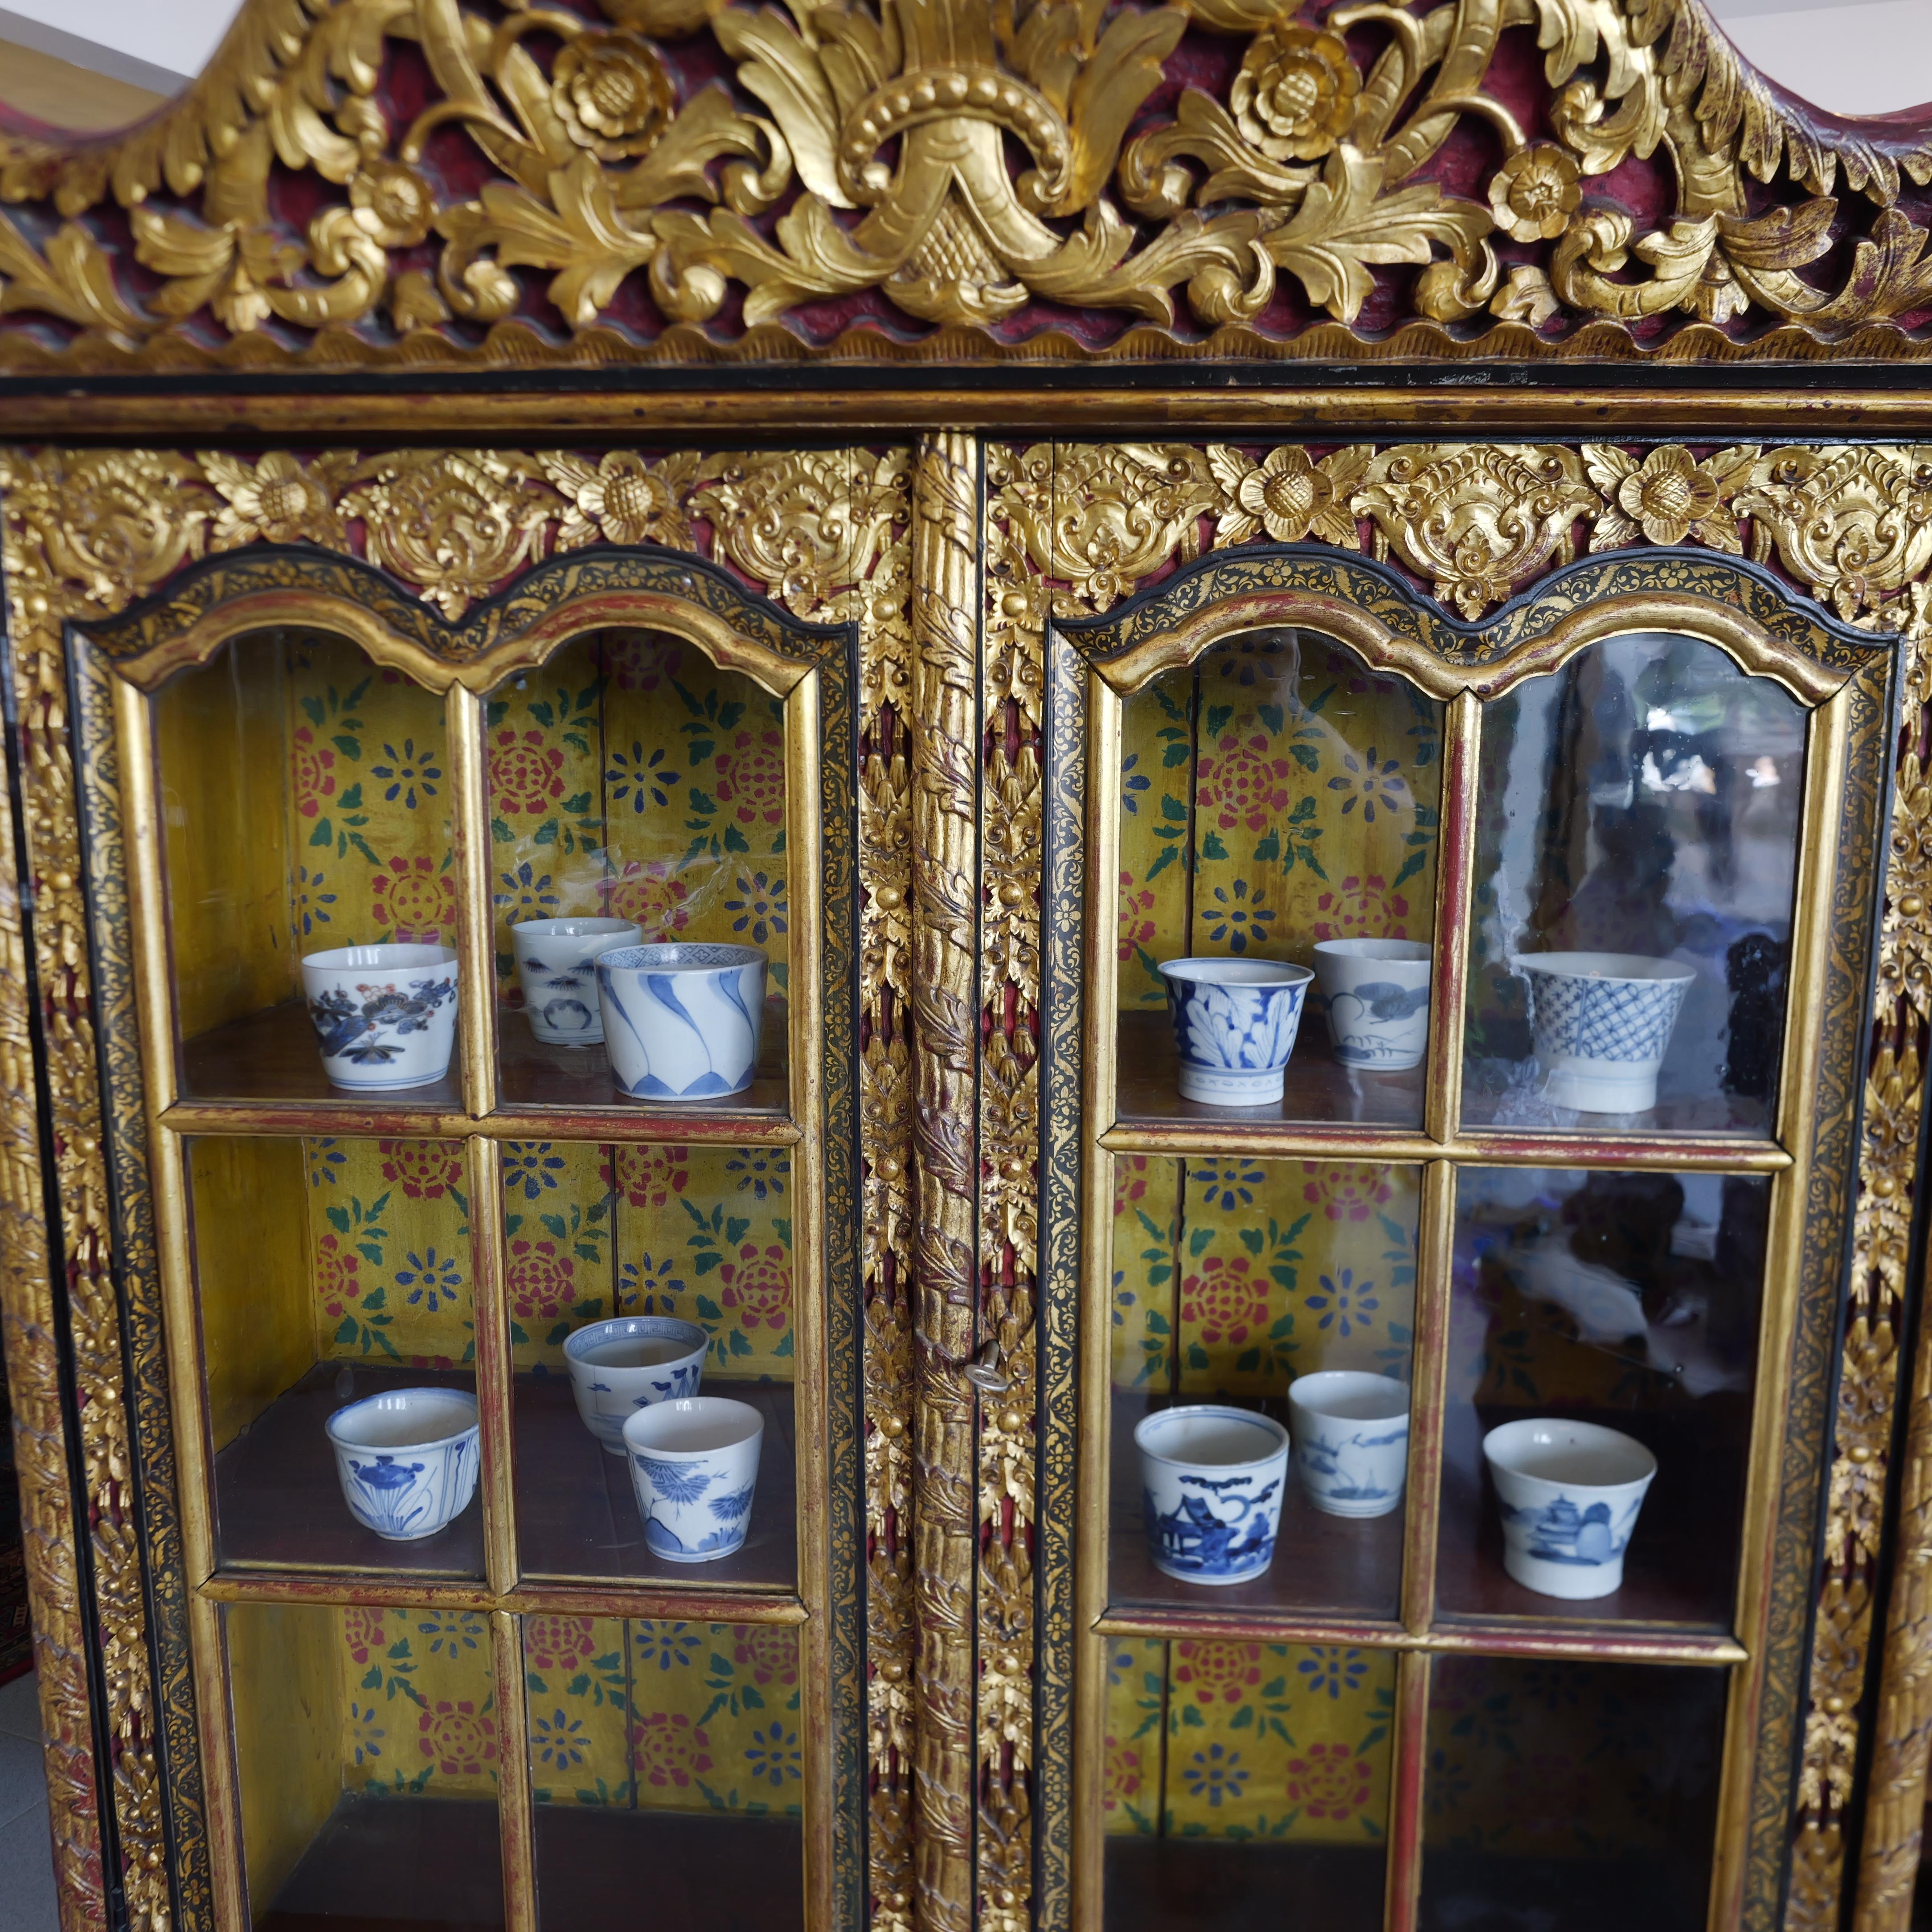 Dieser indonesische Exportschrank aus dem 19. Jahrhundert mit geschnitzter Lackfarbe und Vergoldung ist ein großartiges Beispiel für die exquisite Handwerkskunst und das künstlerische Flair des späten 19. Dieser Schrank besteht aus zwei separaten